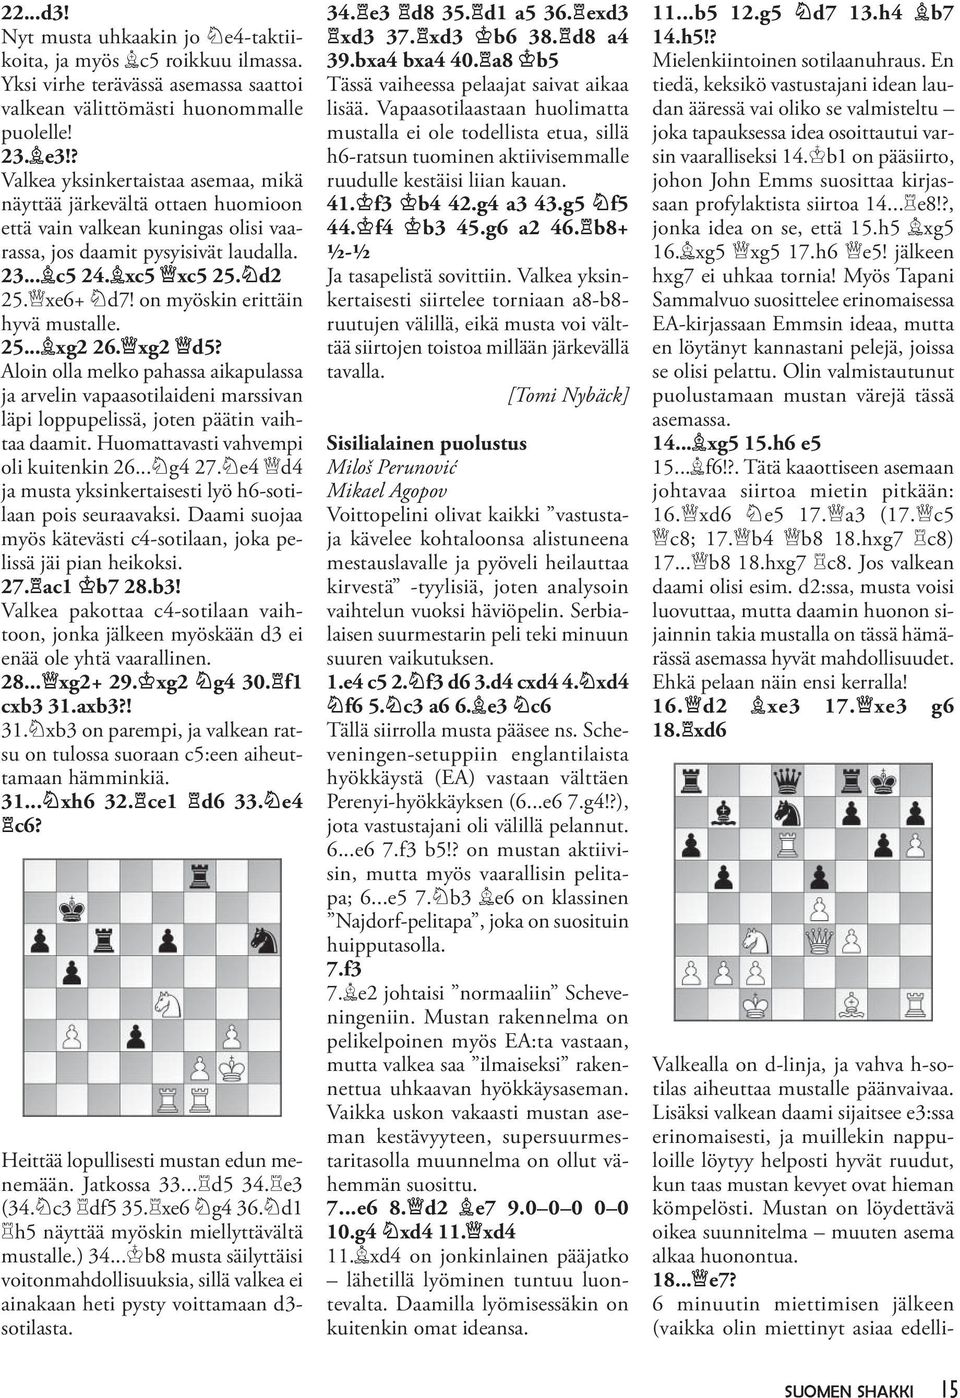 on myöskin erittäin hyvä mustalle. 25... xg2 26. xg2 d5? Aloin olla melko pahassa aikapulassa ja arvelin vapaasotilaideni marssivan läpi loppupelissä, joten päätin vaihtaa daamit.